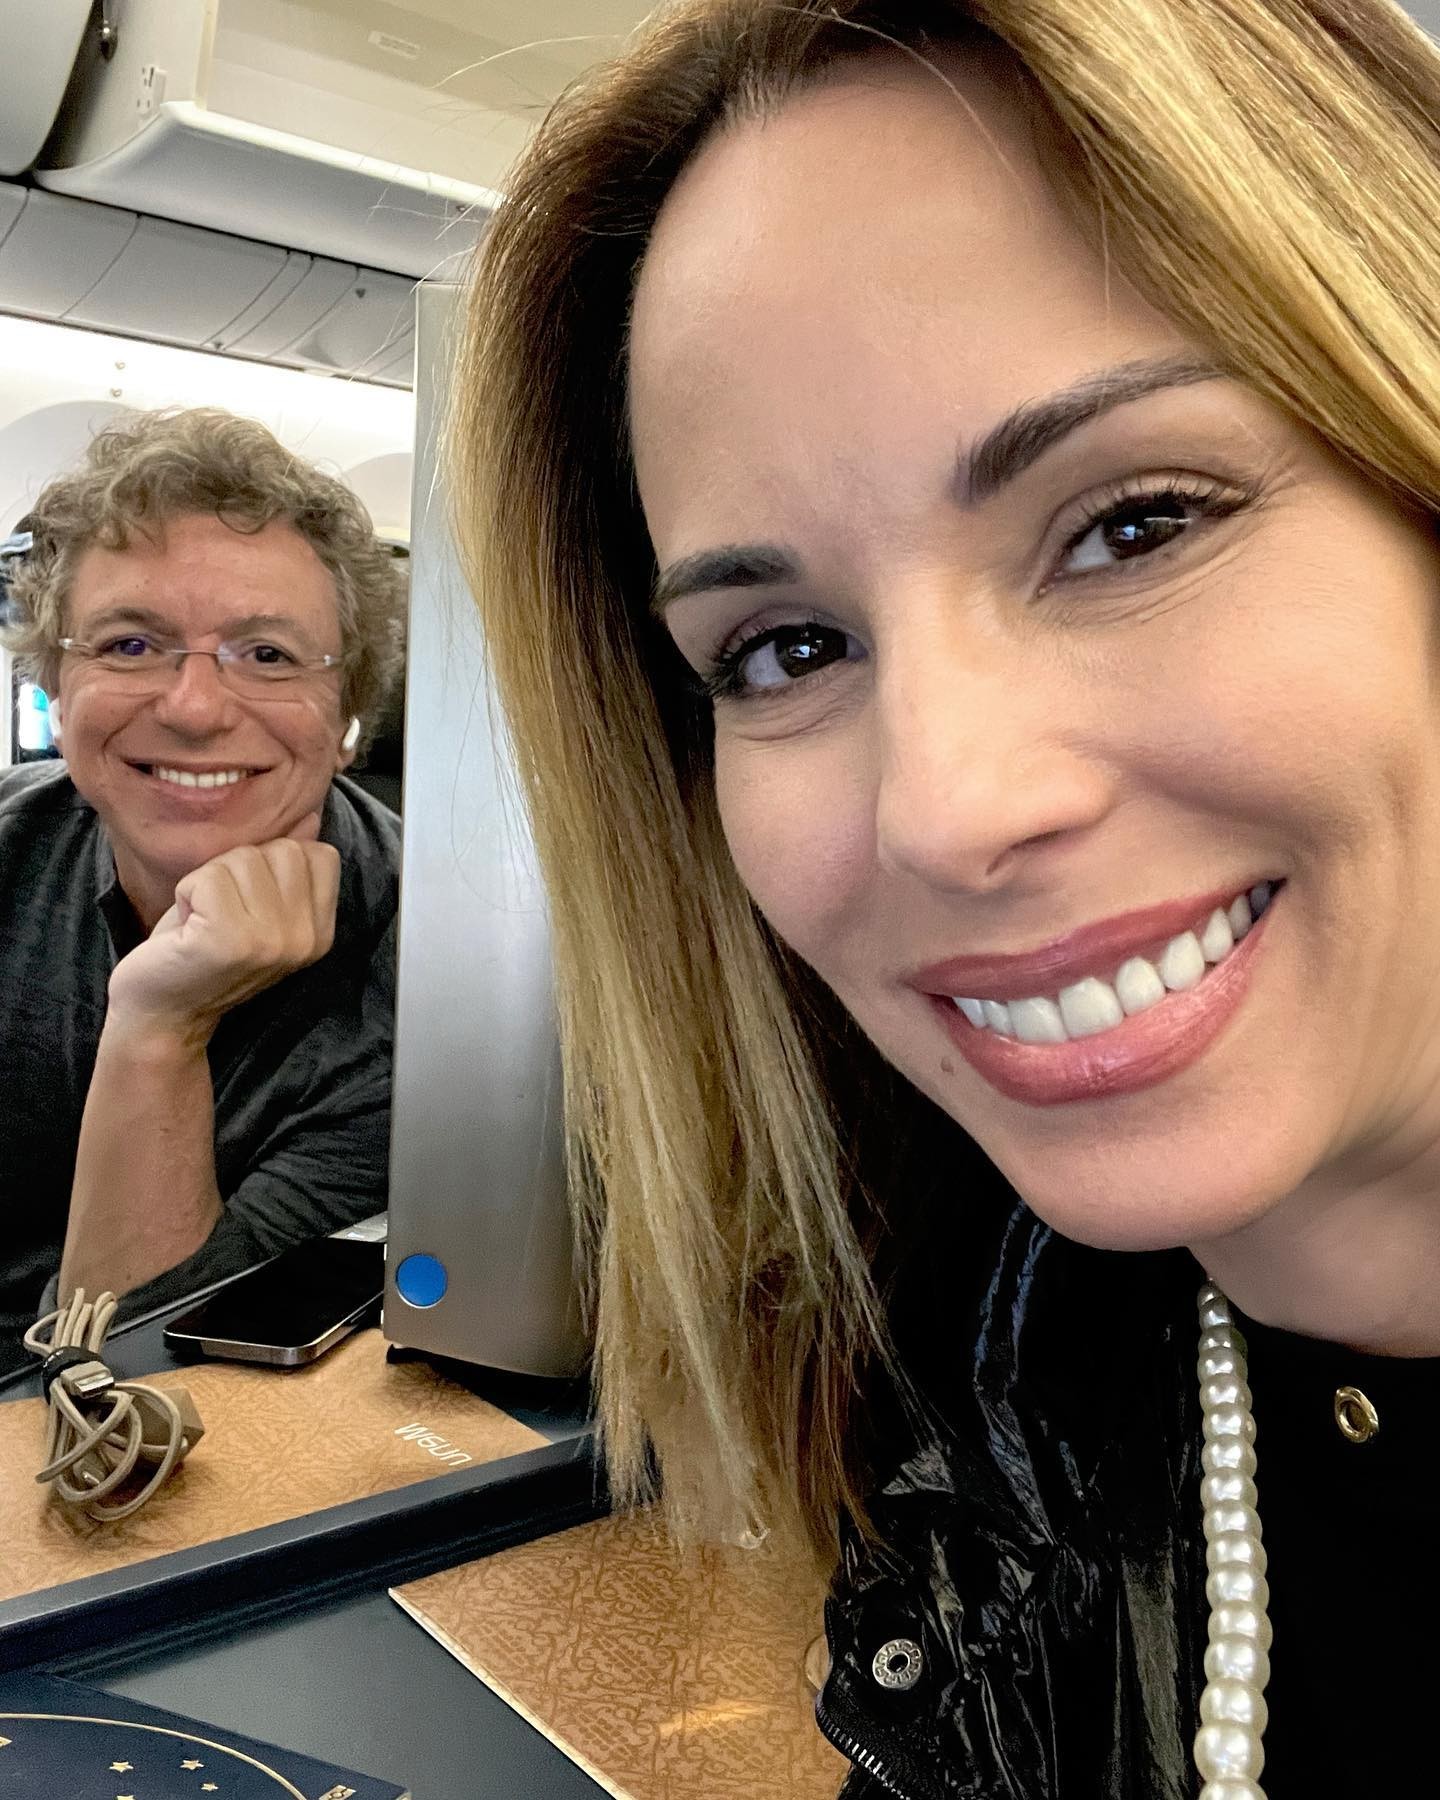 Ana Furtado posa em avião ao lado de Boninho e faz mistério sobre destino  (Foto: Reprodução / Instagram)